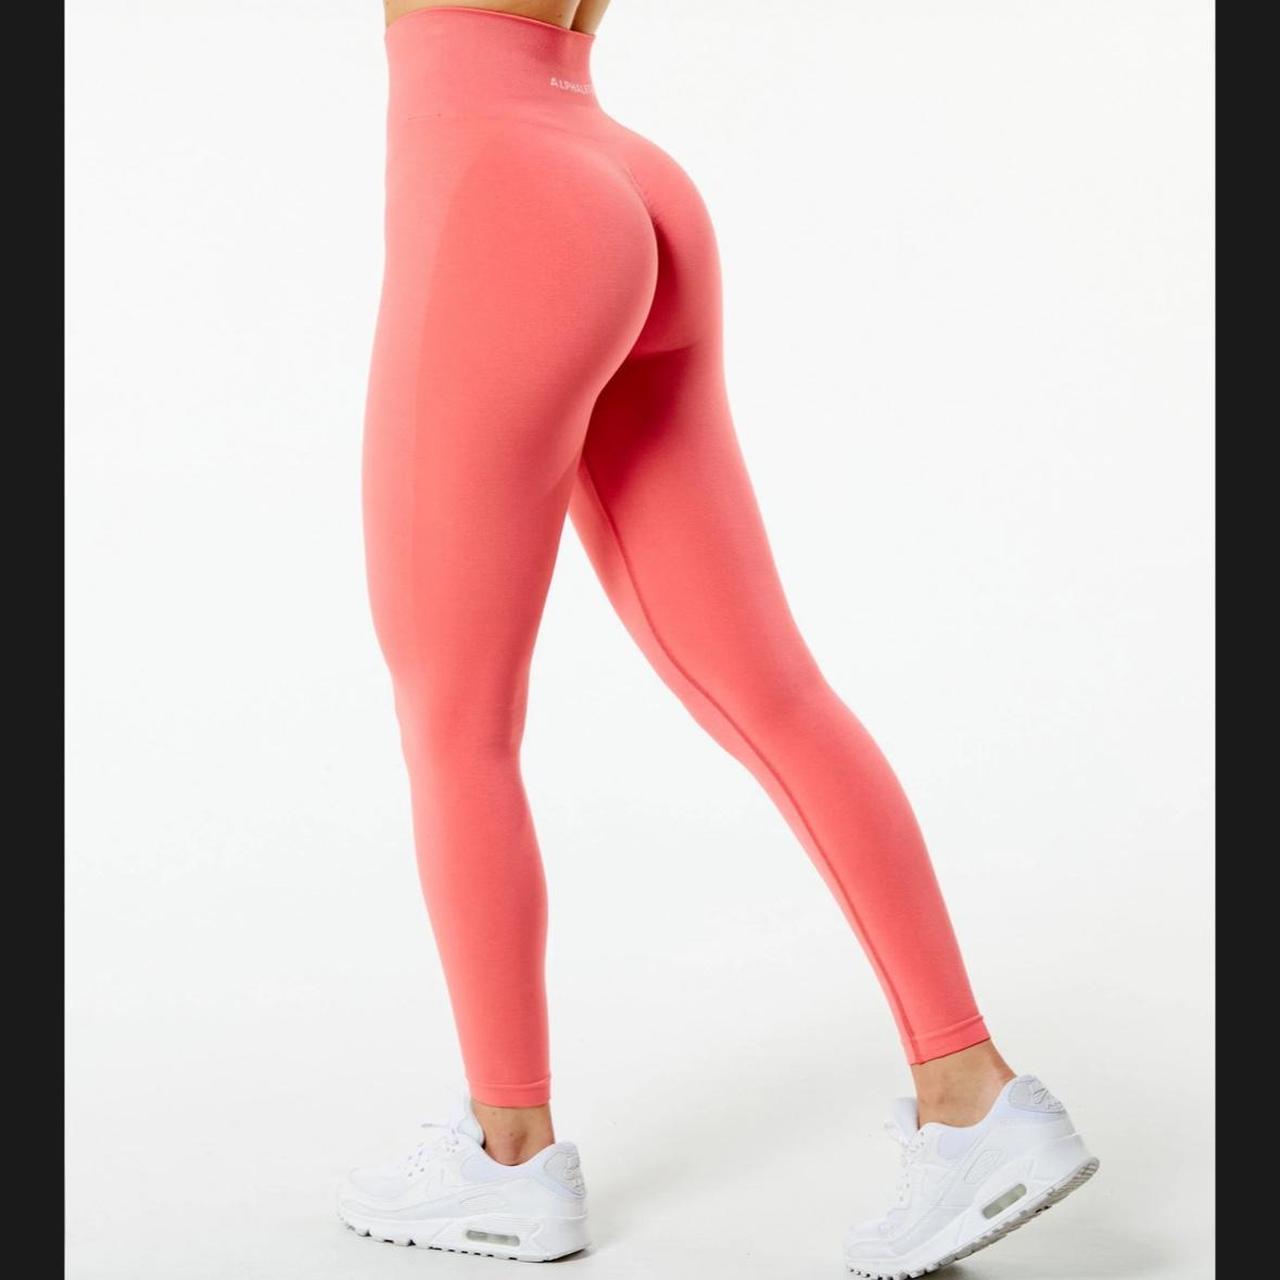 Alphalete amplify coral pixel pink leggings xl gym - Depop